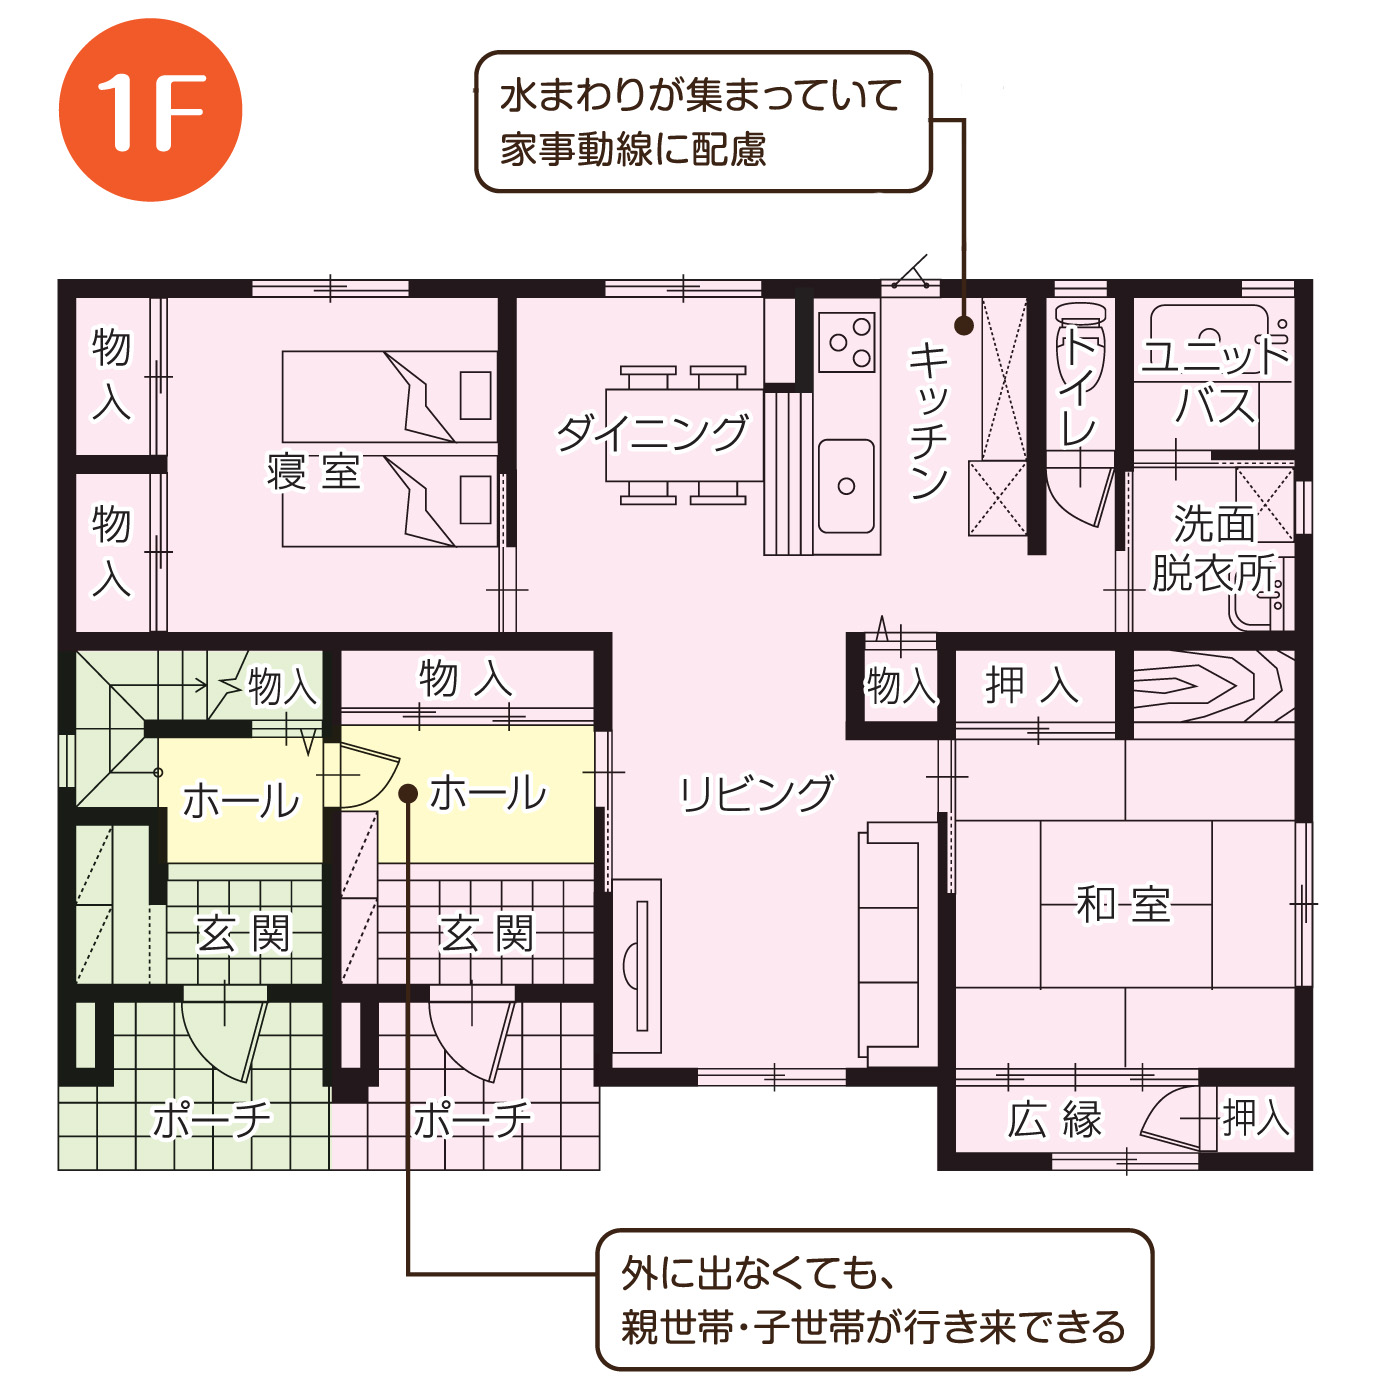 二世帯住宅 愛知県 岐阜県で新築 注文住宅をお探しなら新和建設にお任せください